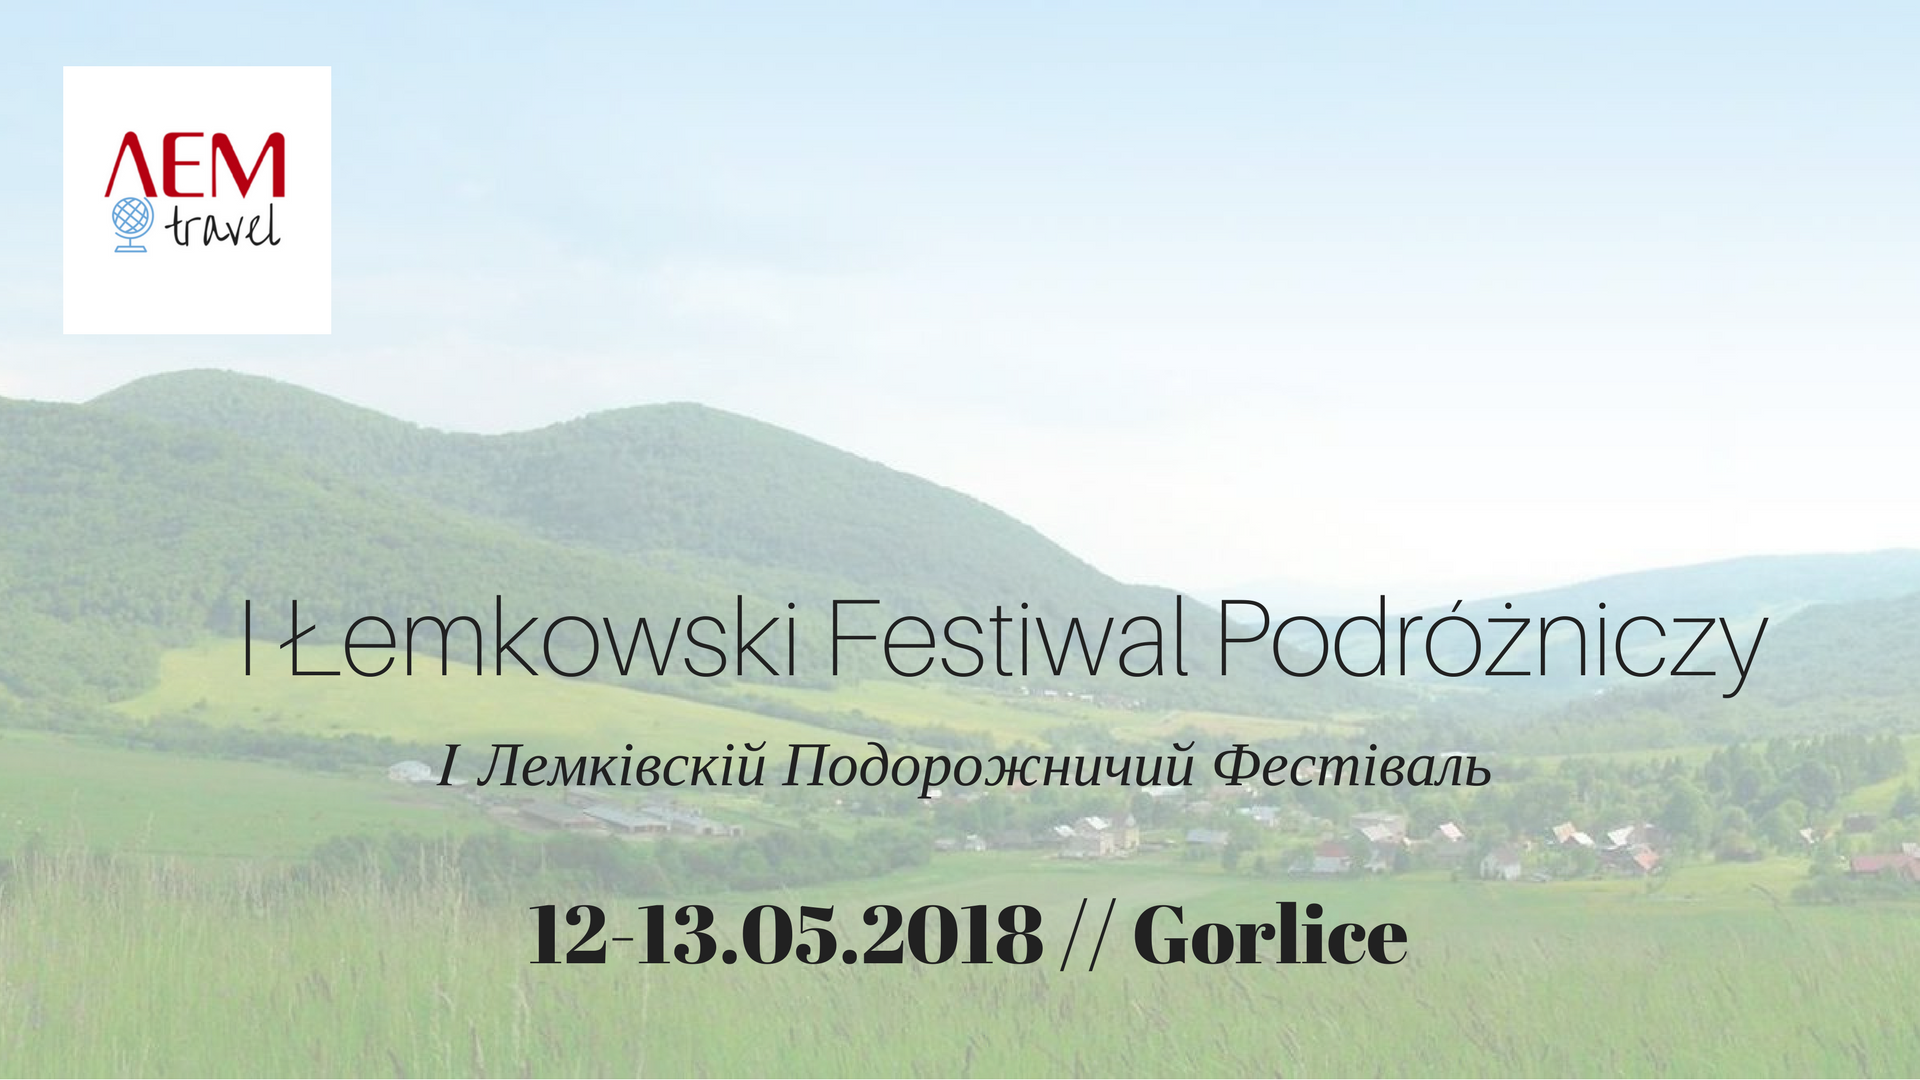 LEMtravel Łemkowski Festiwal Podróżniczy w Gorlicach